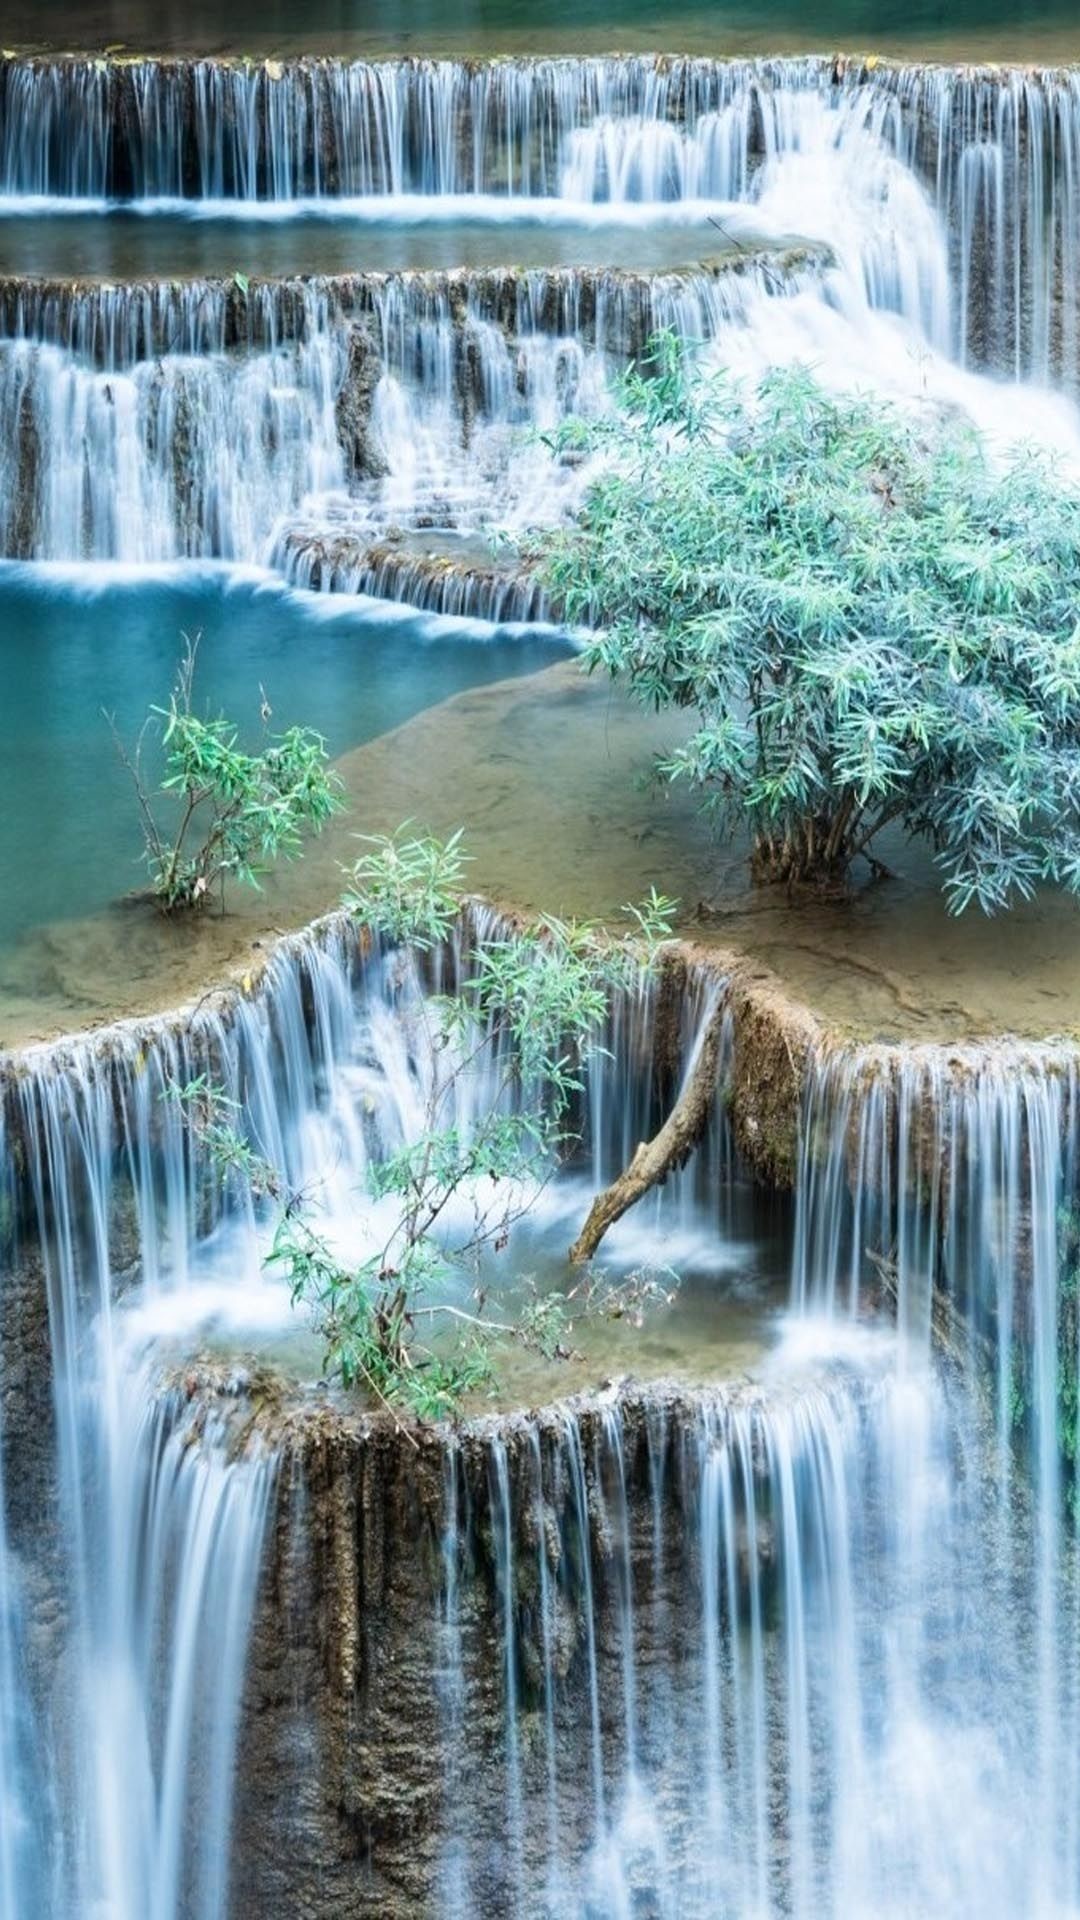 Dừng lại và chiêm ngưỡng hình nền thác nước đẹp này trên màn hình của bạn. Sự tự nhiên tuyệt đẹp của cảnh vật này sẽ mang lại cho bạn một cảm giác tươi mới và thư giãn.